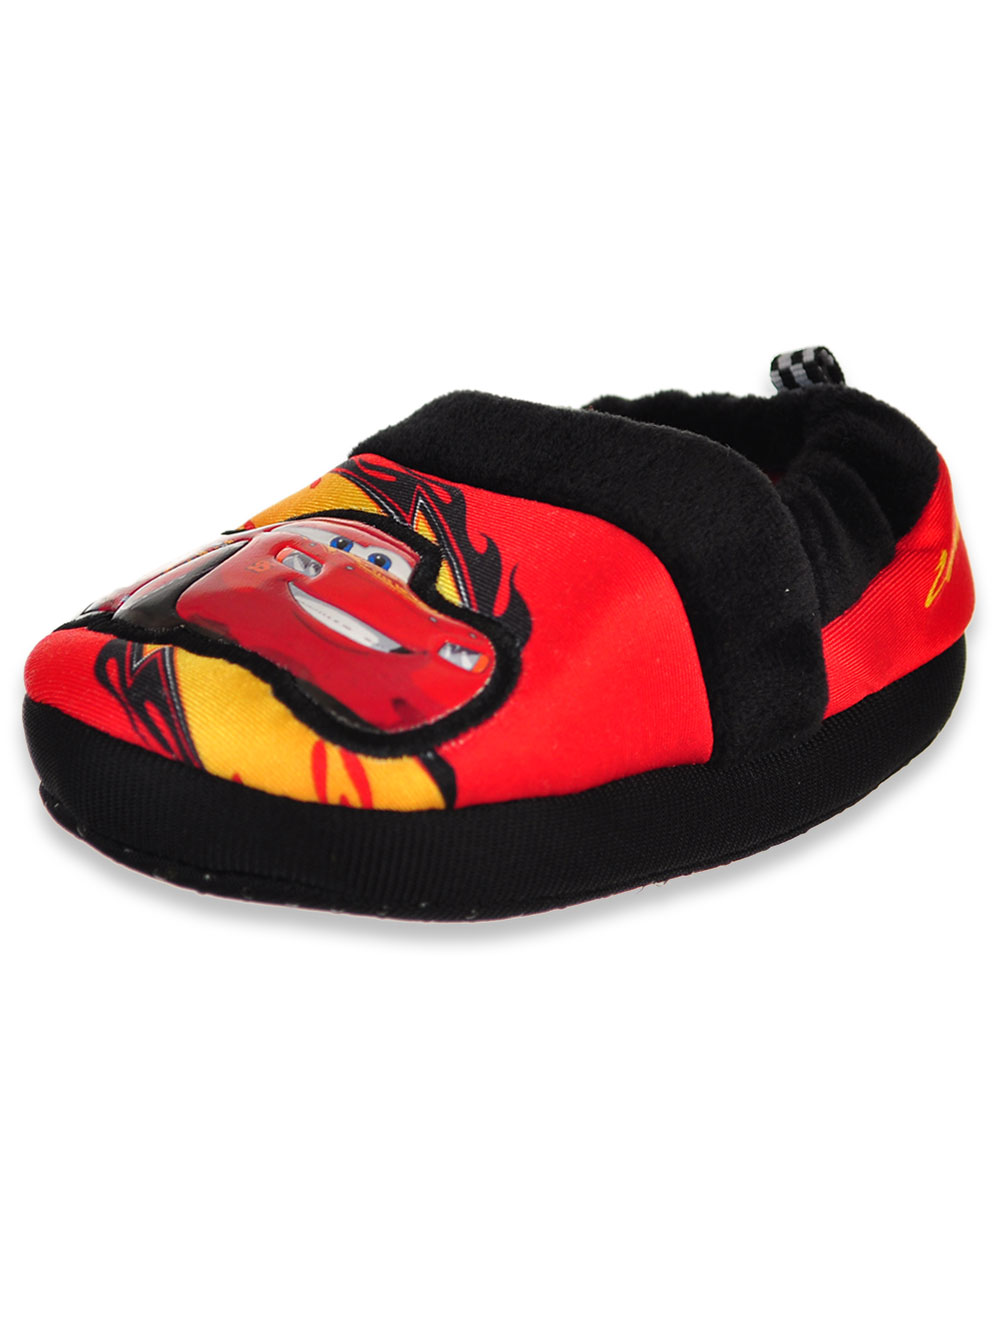 Disney Boys Slip On Comfy Loafer Slippers - image 1 of 4